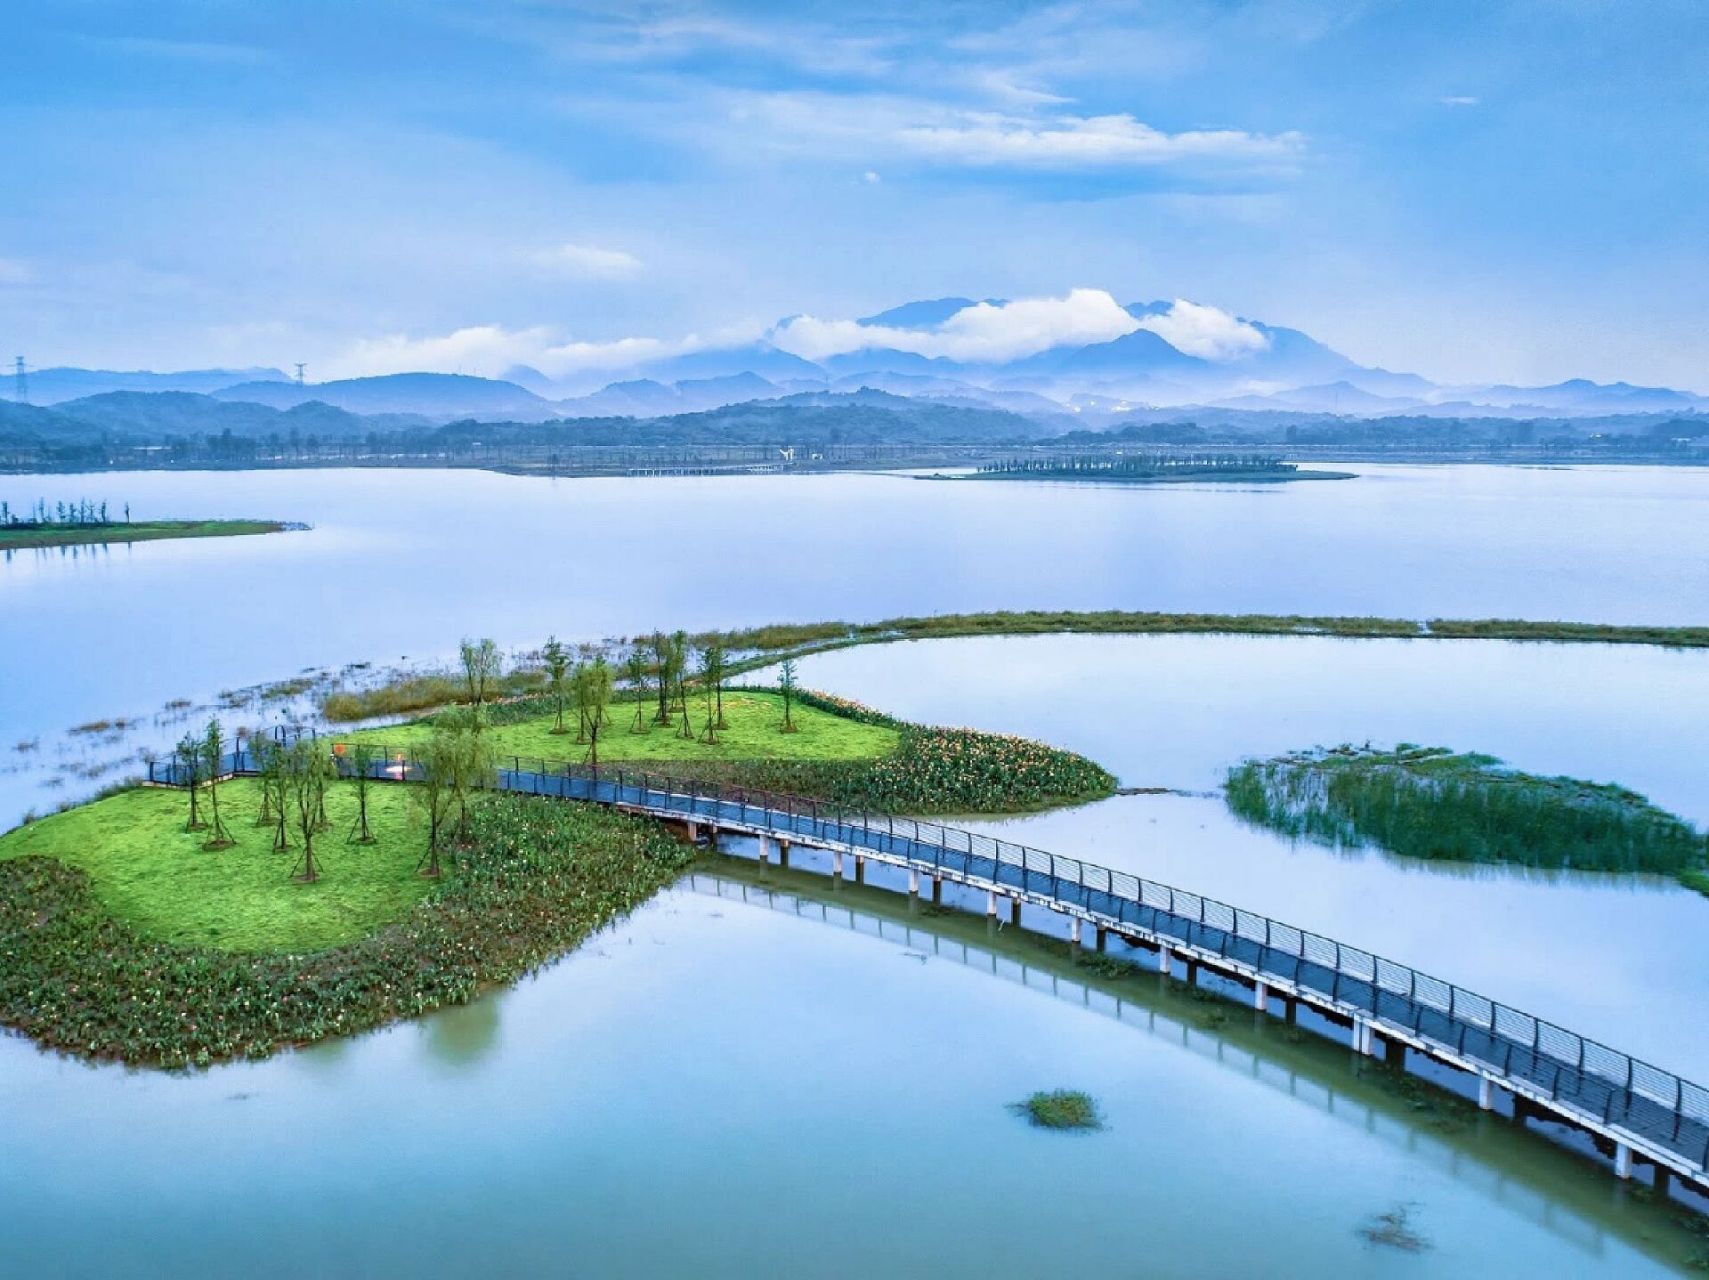 鄱阳湖位于南昌,九江交界处的长江南岸,是中国第一大淡水湖,也是中国